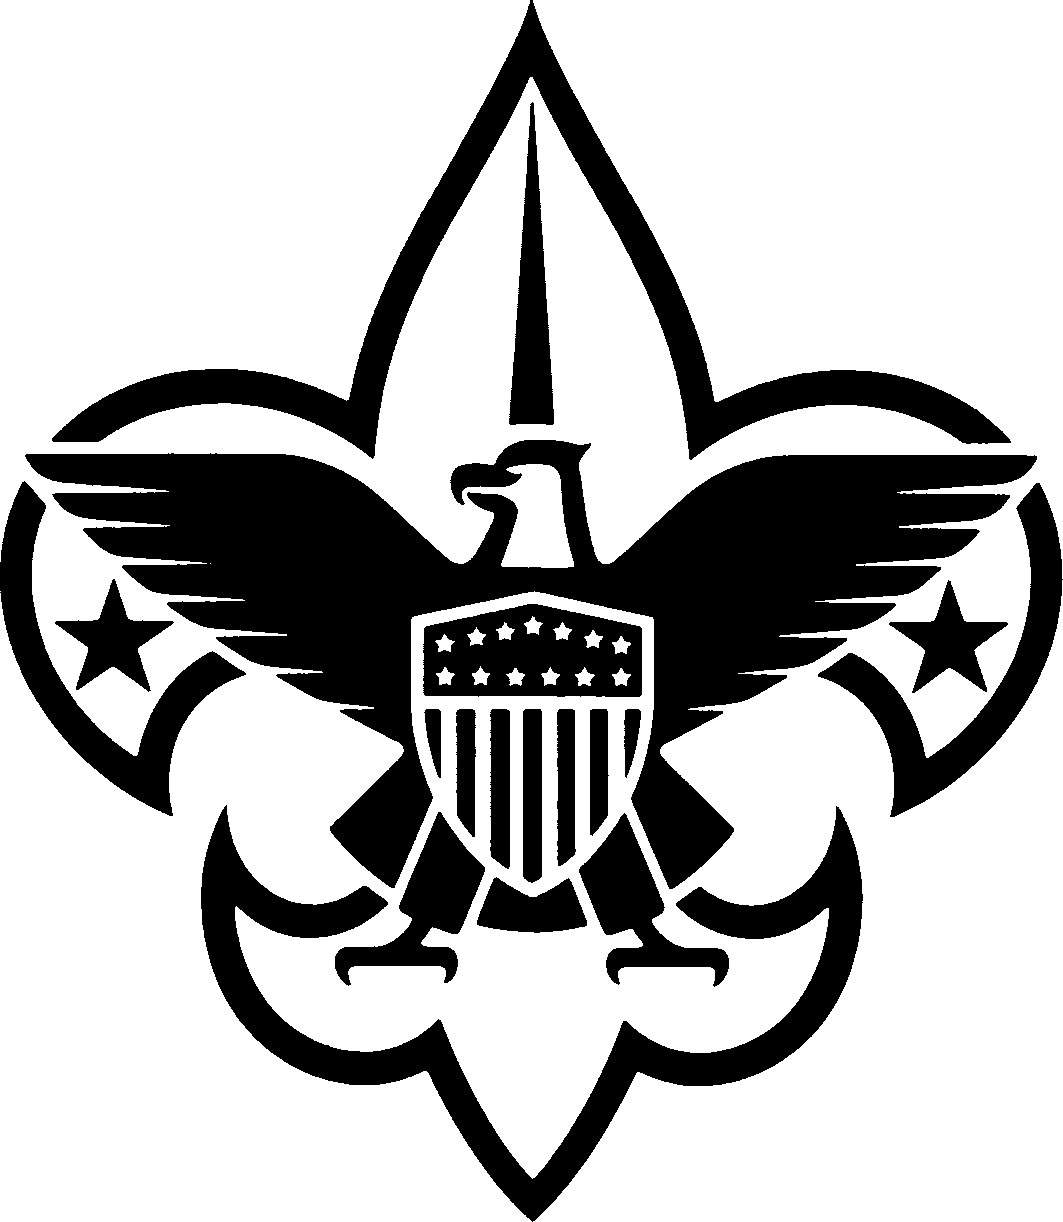 Free Boy Scout Logo Png, Download Free Clip Art, Free Clip.